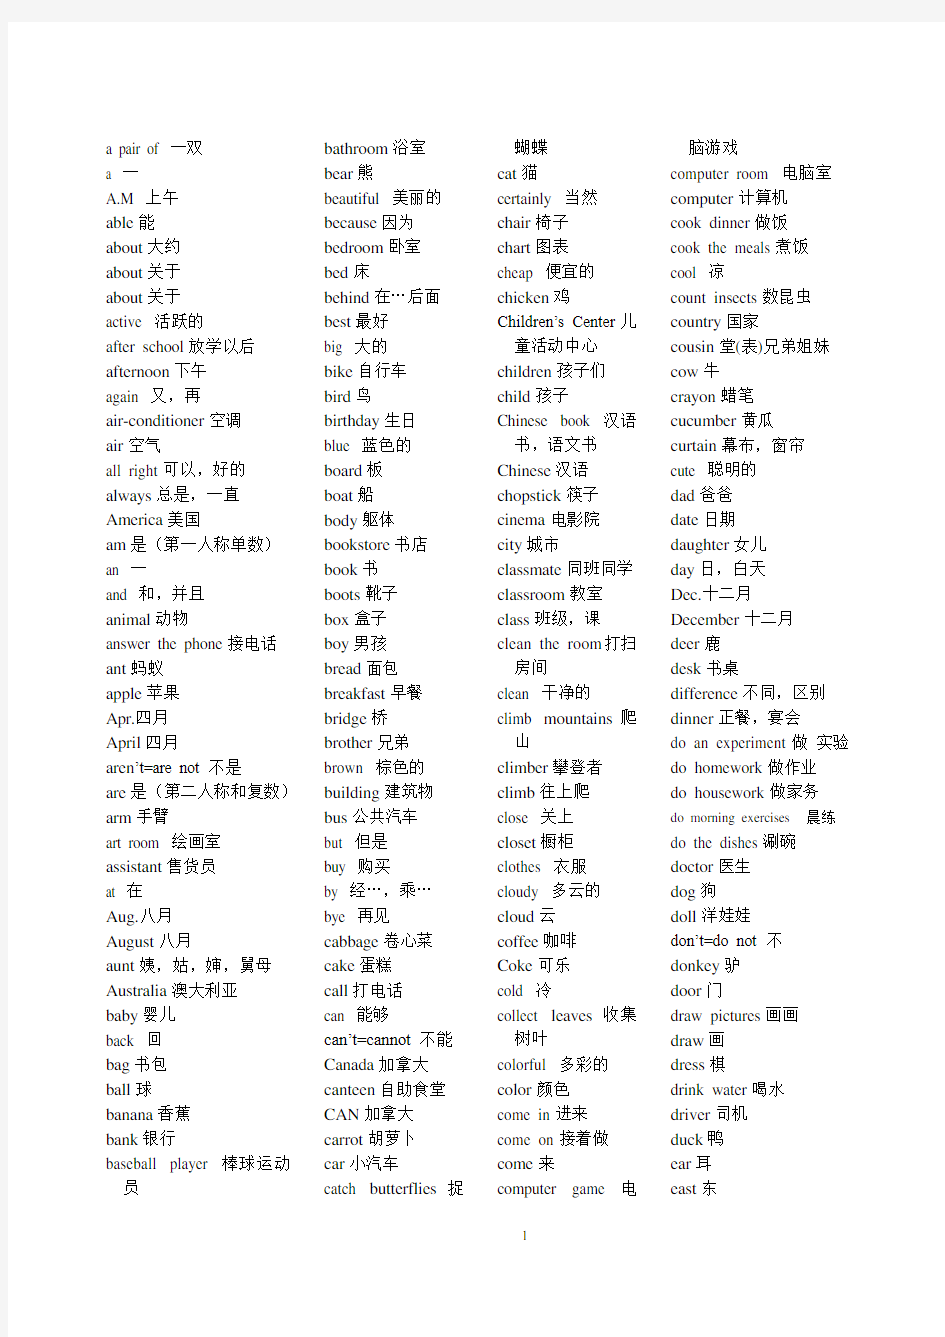 小学六年级英语词汇表(排序)